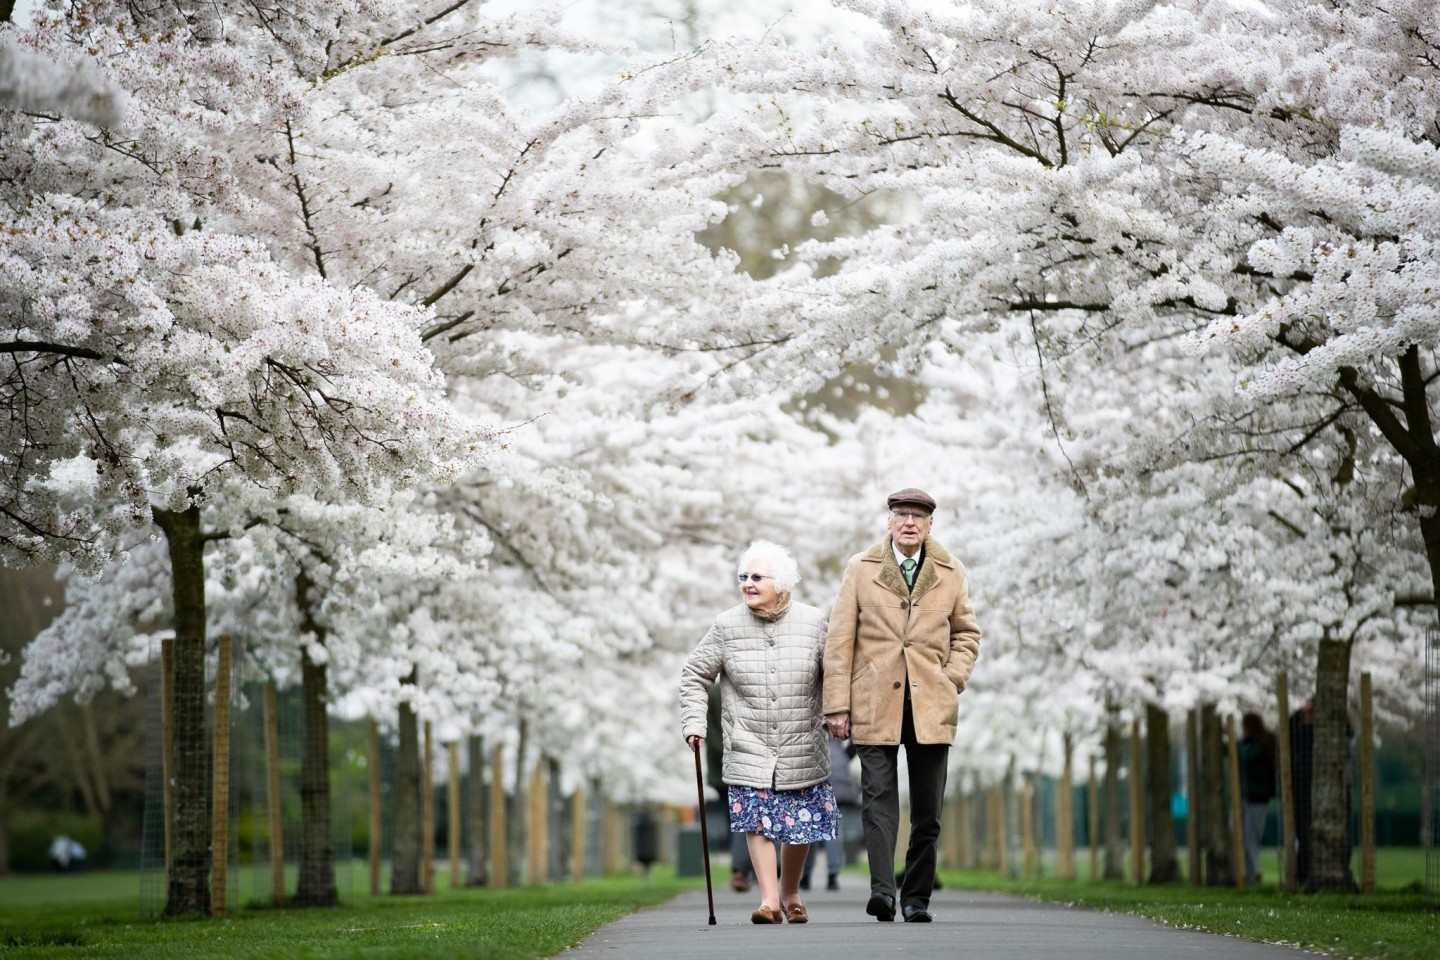 Trotz häufigerer körperlicher Beschwerden sind ältere Menschen in der Regel glücklicher und zufriedener als mittelalte Erwachsene.